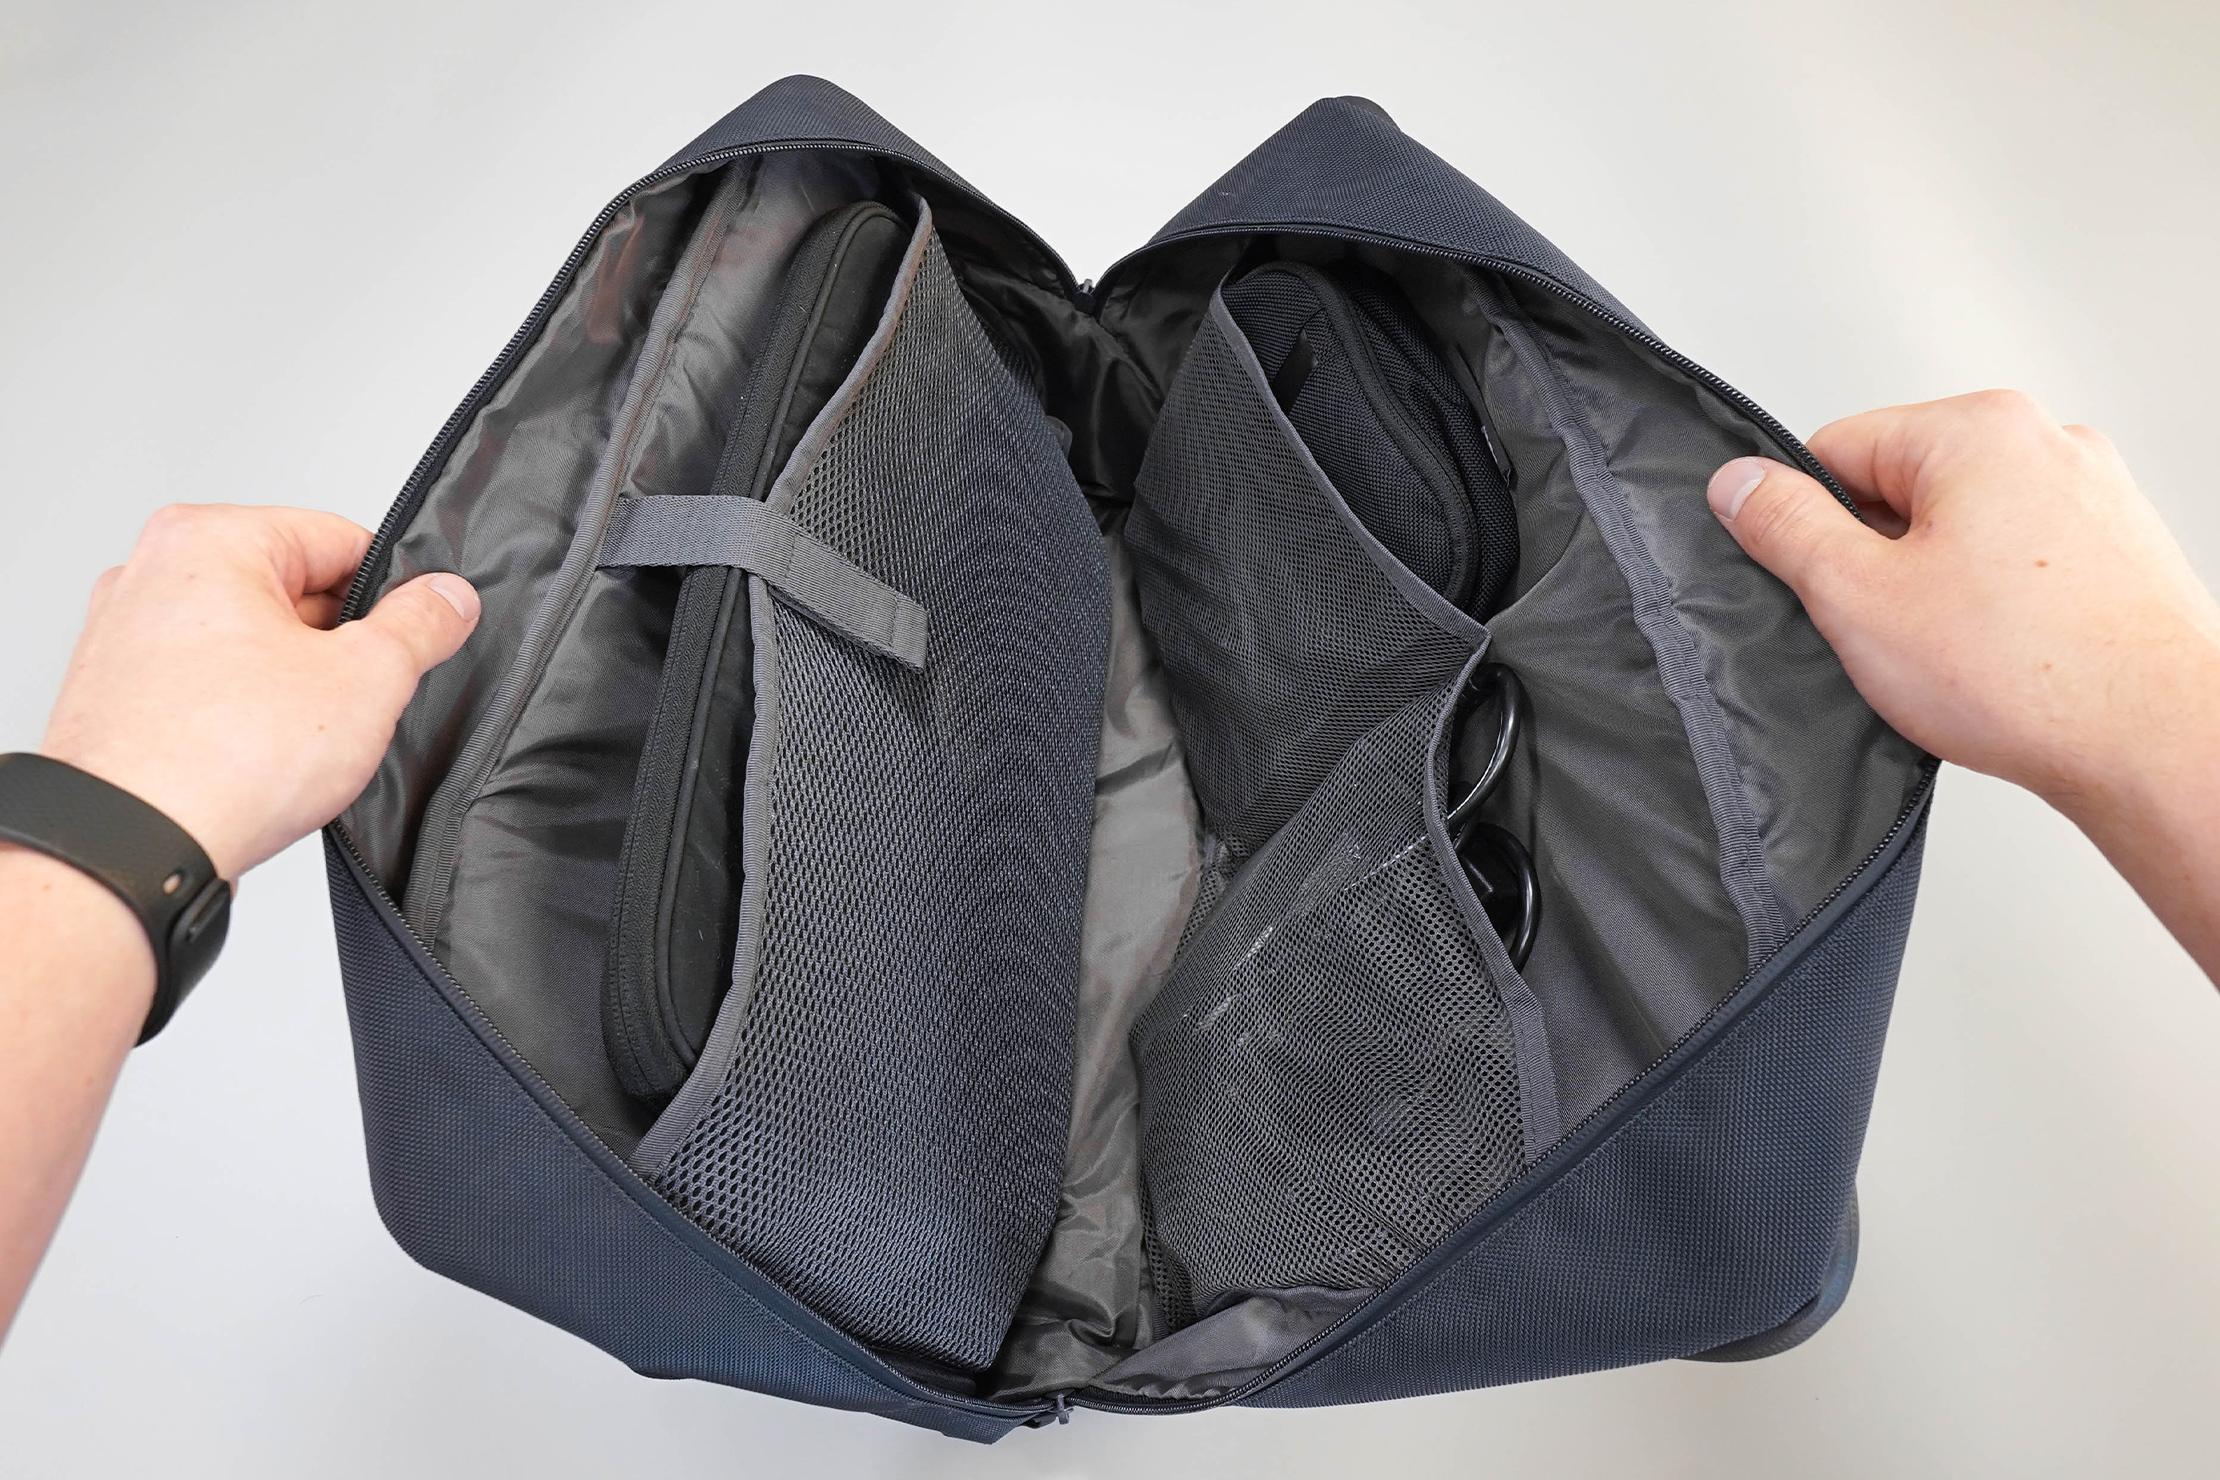 Uniqlo 3-Way Bag Main Compartment 